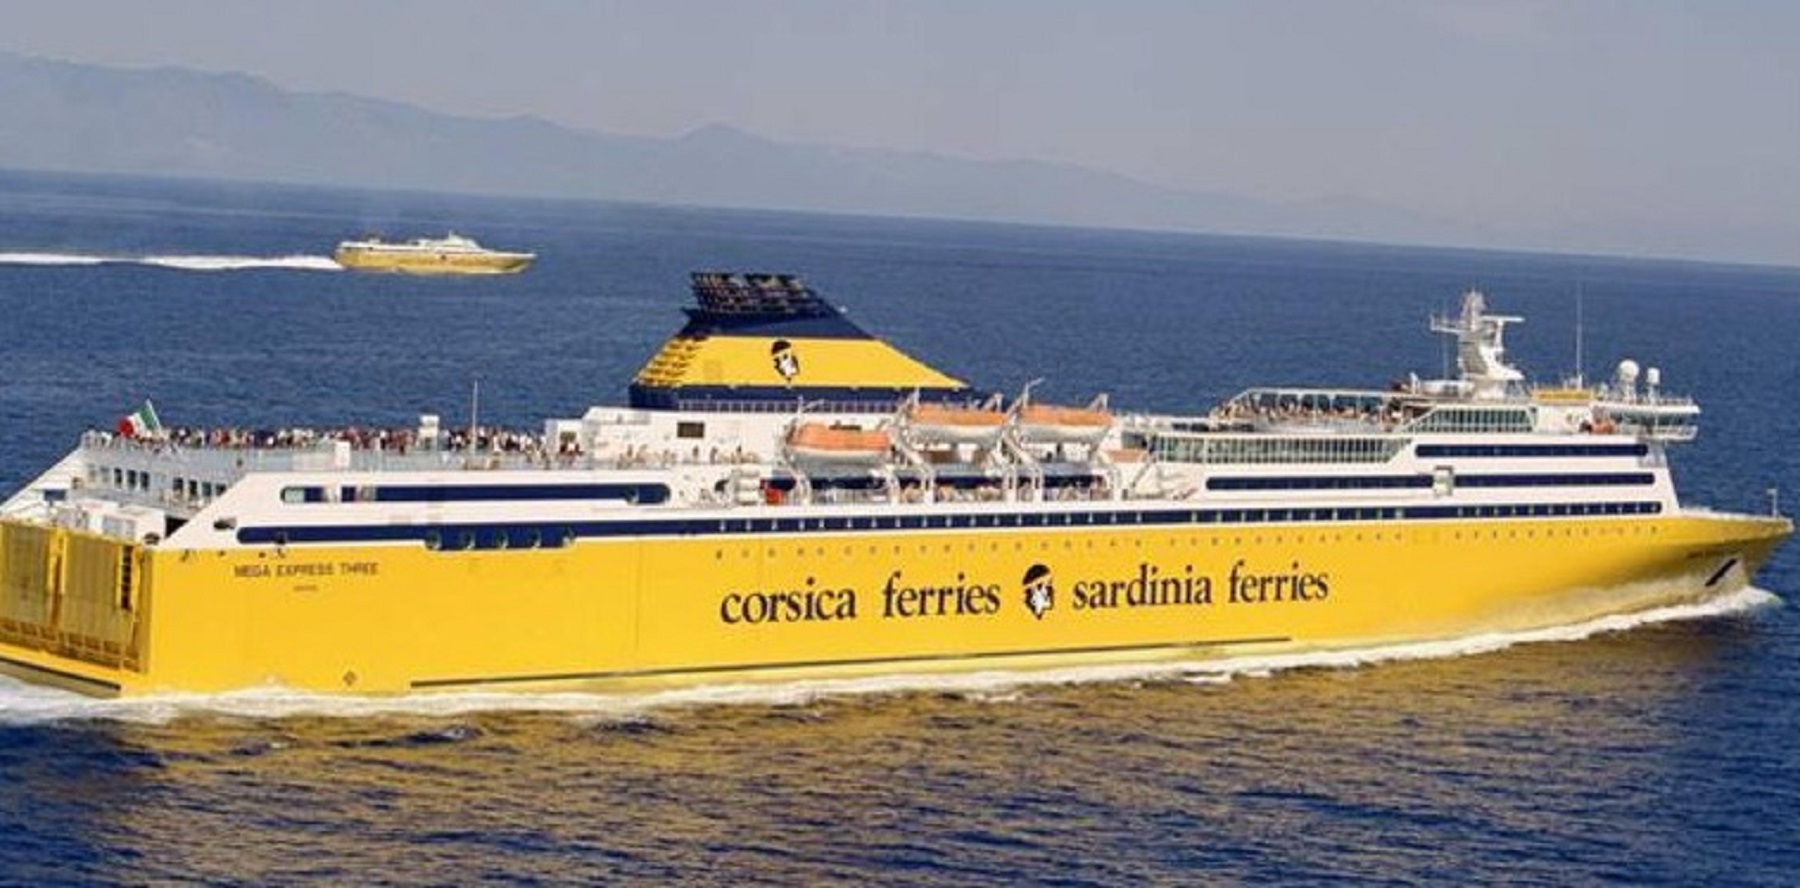 Corsica Sardinia Ferries cerca medici di bordo: ecco come candidarsi